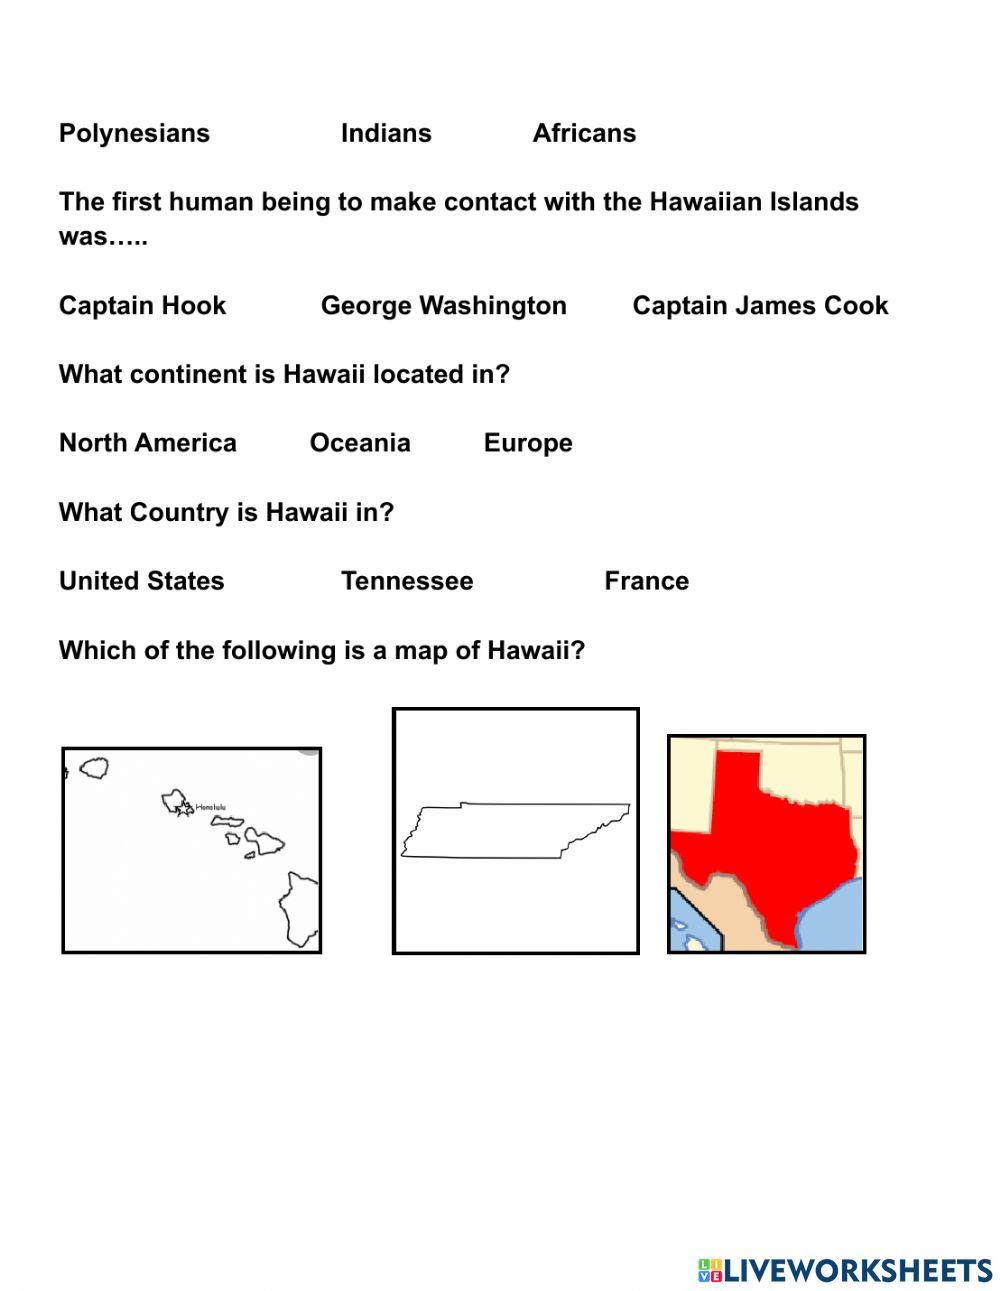 Hawaiian Historhy Part 1